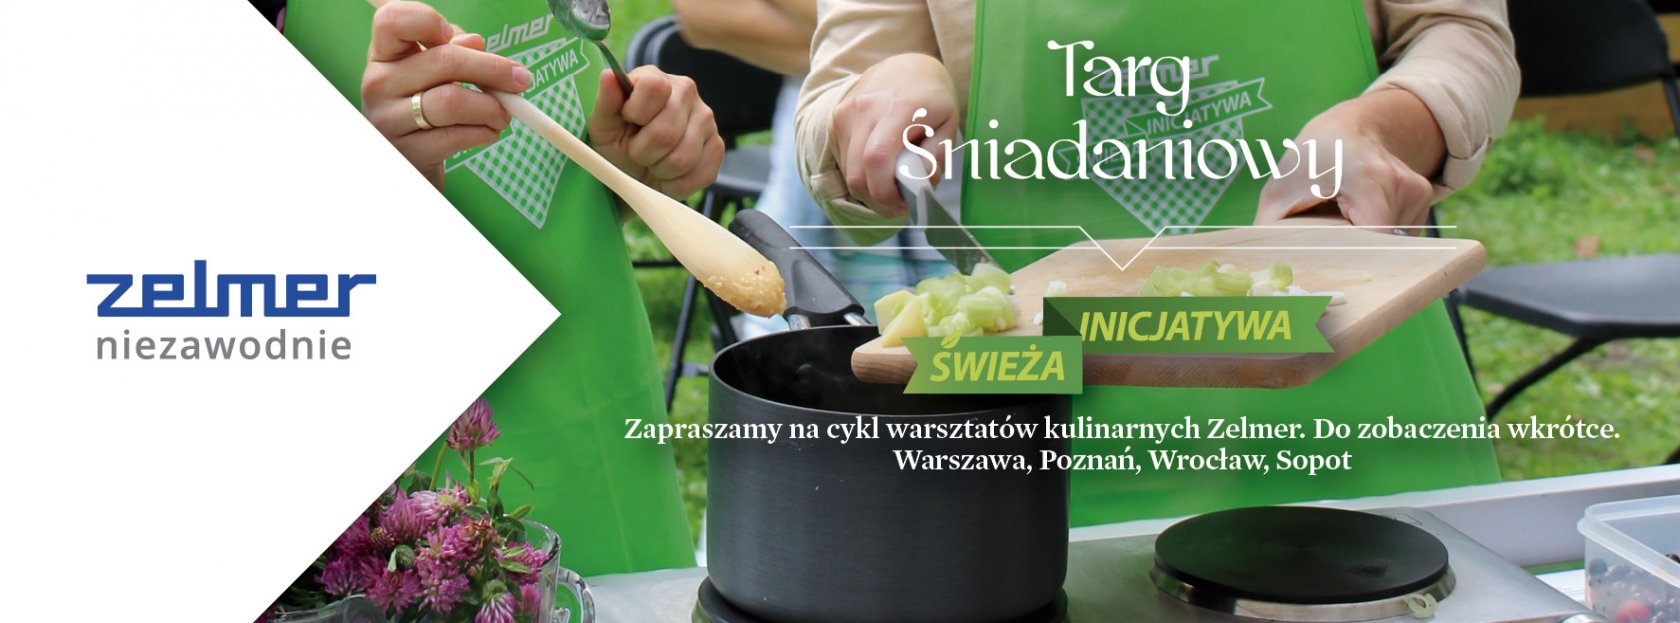 all - Rozpoczynamy cykl warsztatów kulinarnych „Świeża Inicjatywa” na Targu Śniadaniowym w całej Polsce!